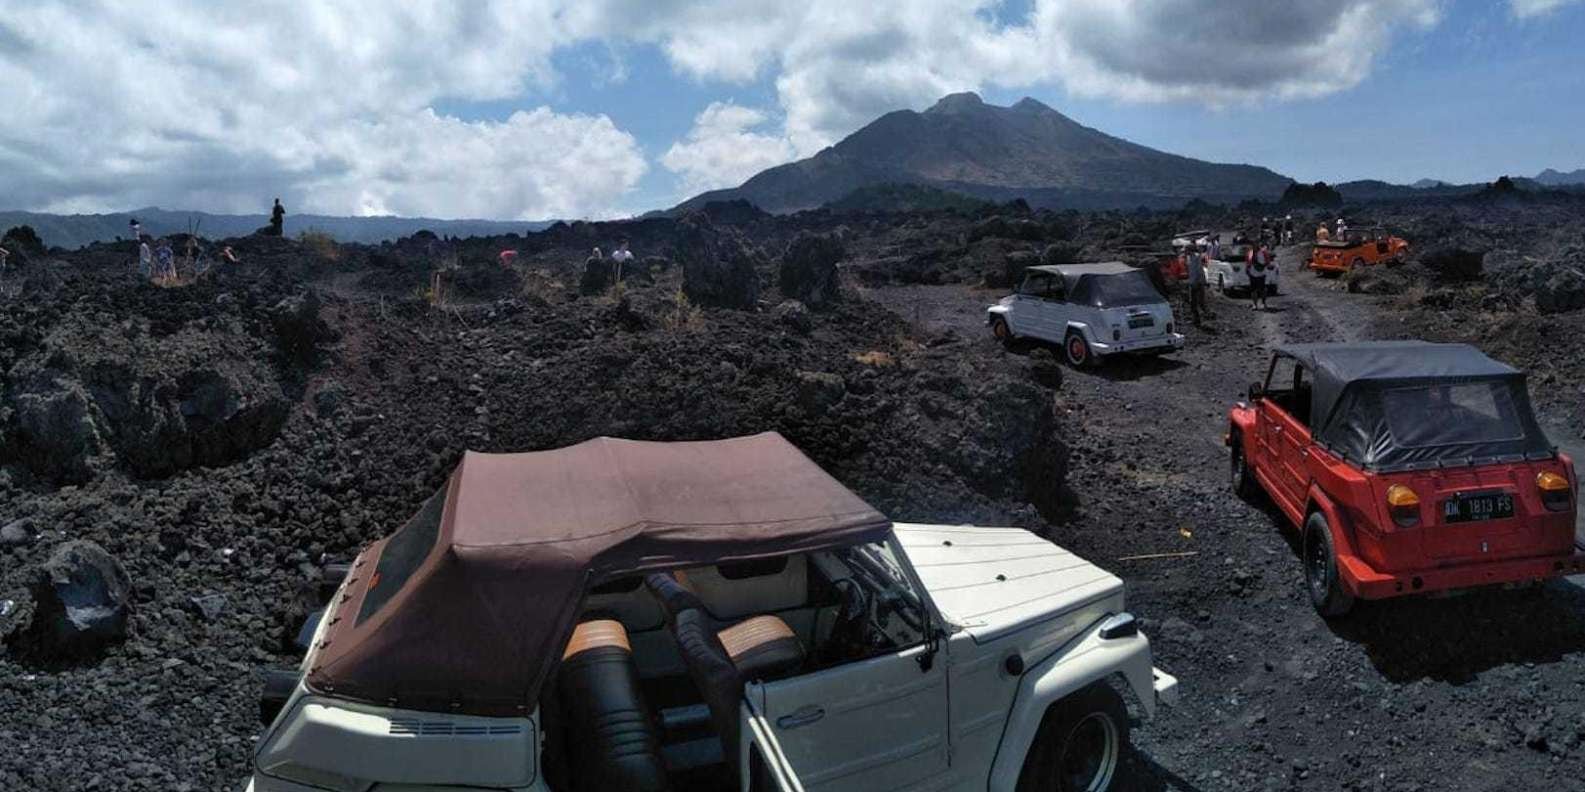 016-mount-batur-volkswagen-jeep-volcano-safari-2-t187437.jpg